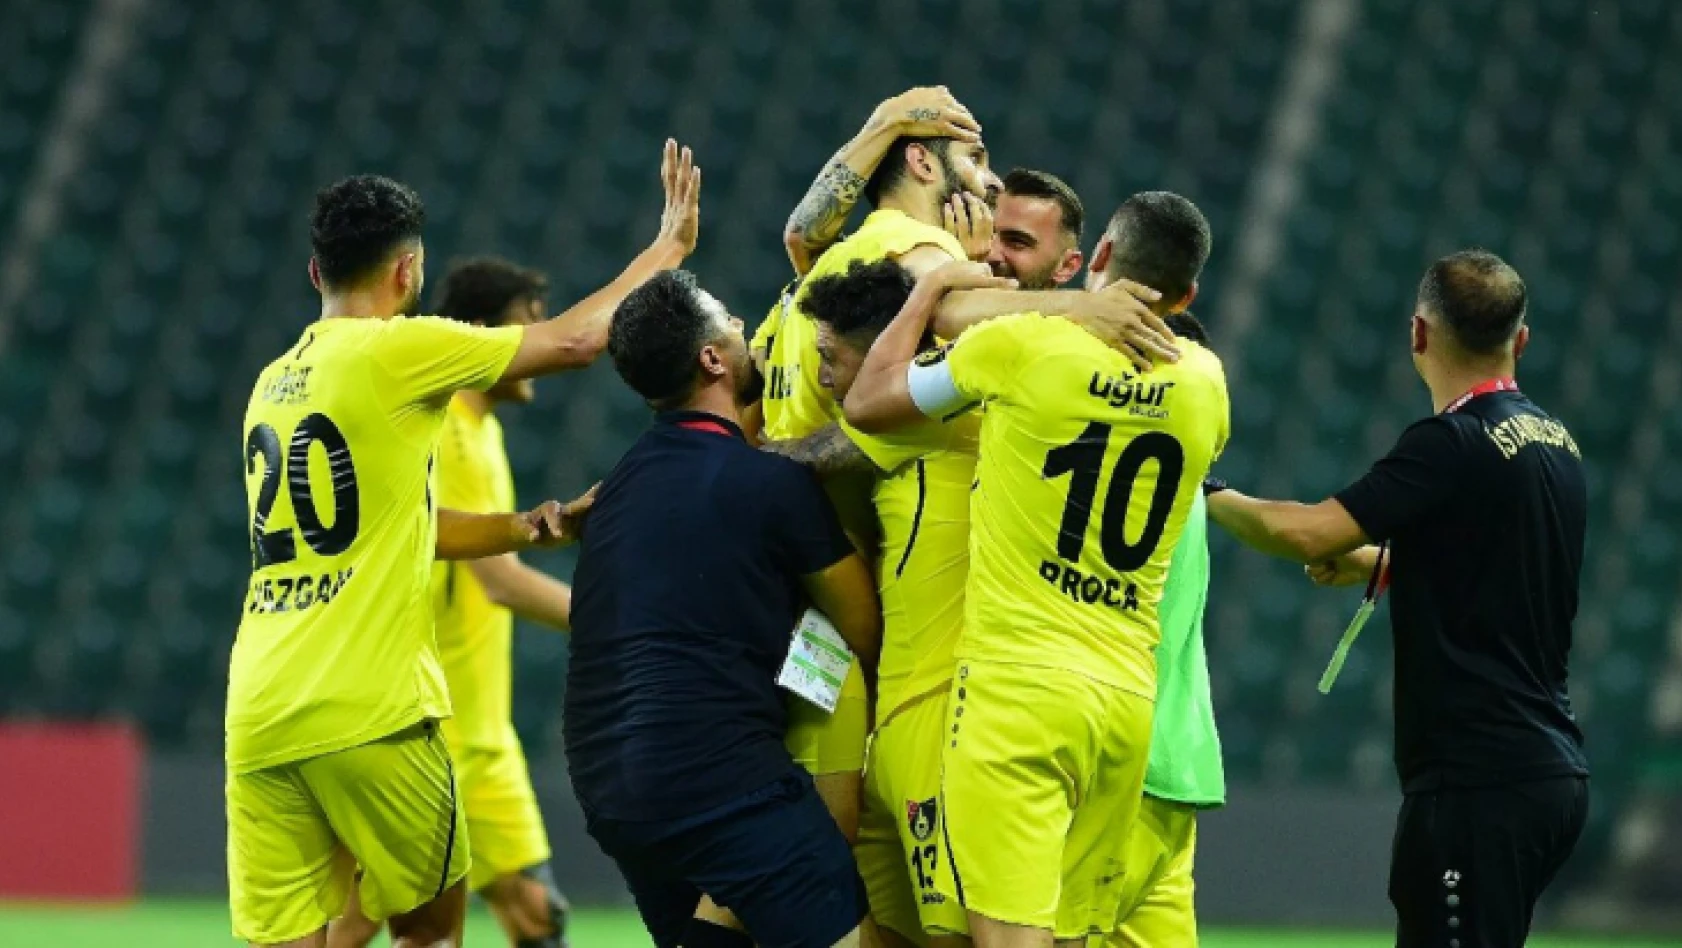 Süper Lig'e yükselen son takım İstanbulspor oldu